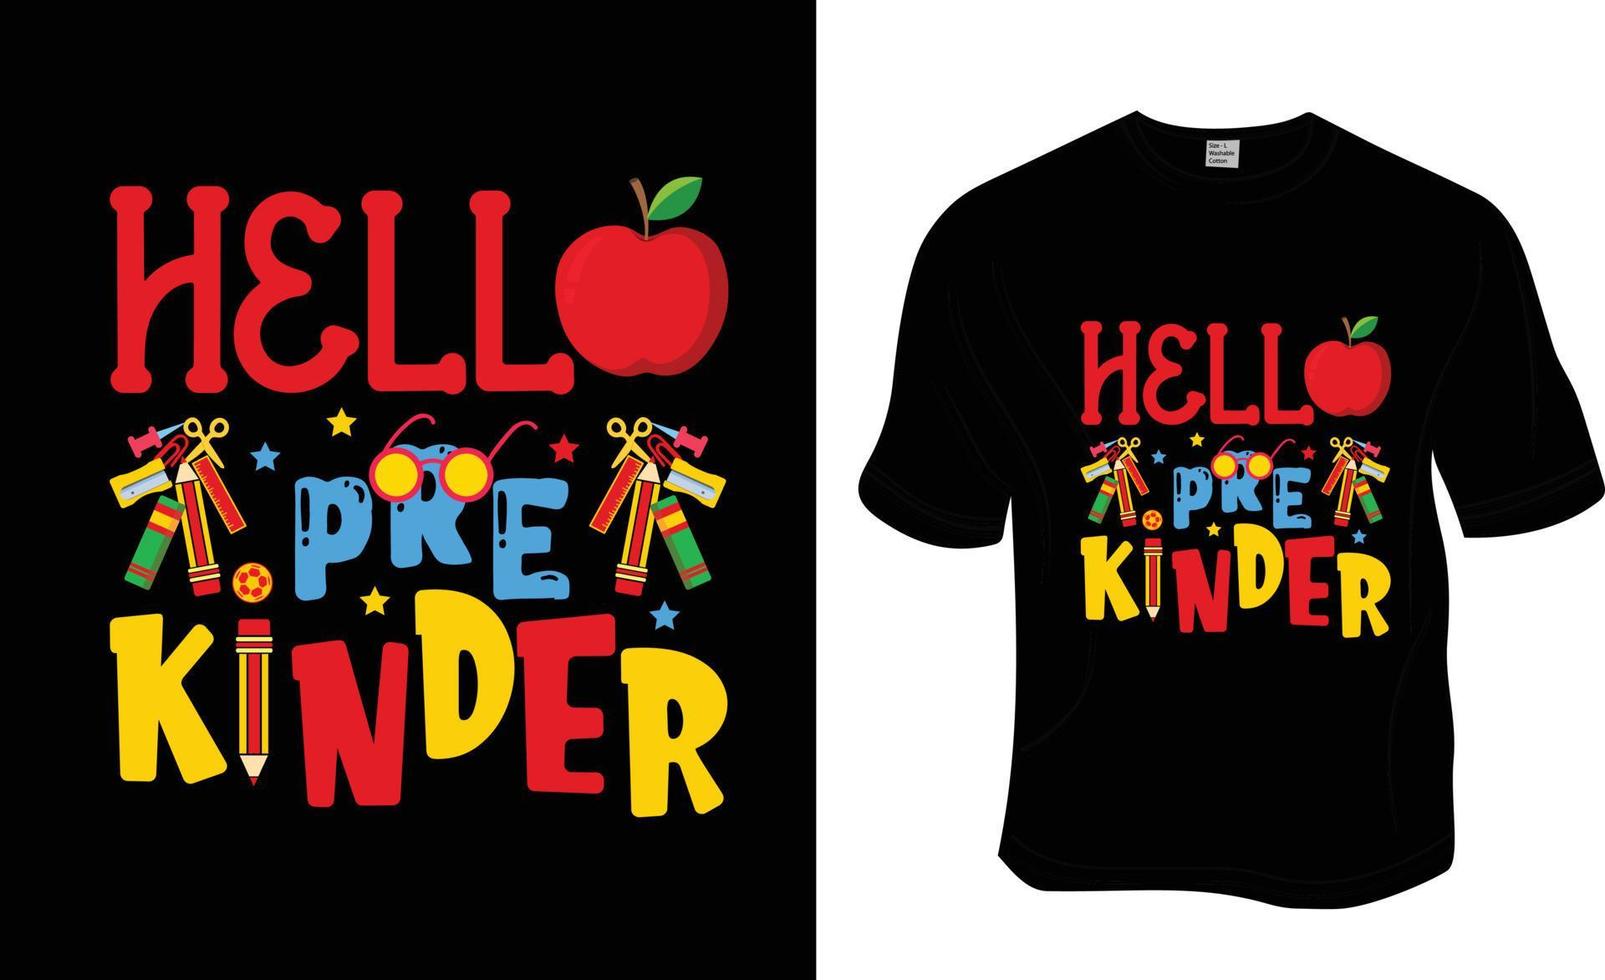 hallo pre kinder, schult-shirt design für kinder. druckfertig für Bekleidung, Poster und Illustrationen. moderner, einfacher T-Shirt-Vektor mit Schriftzug. vektor